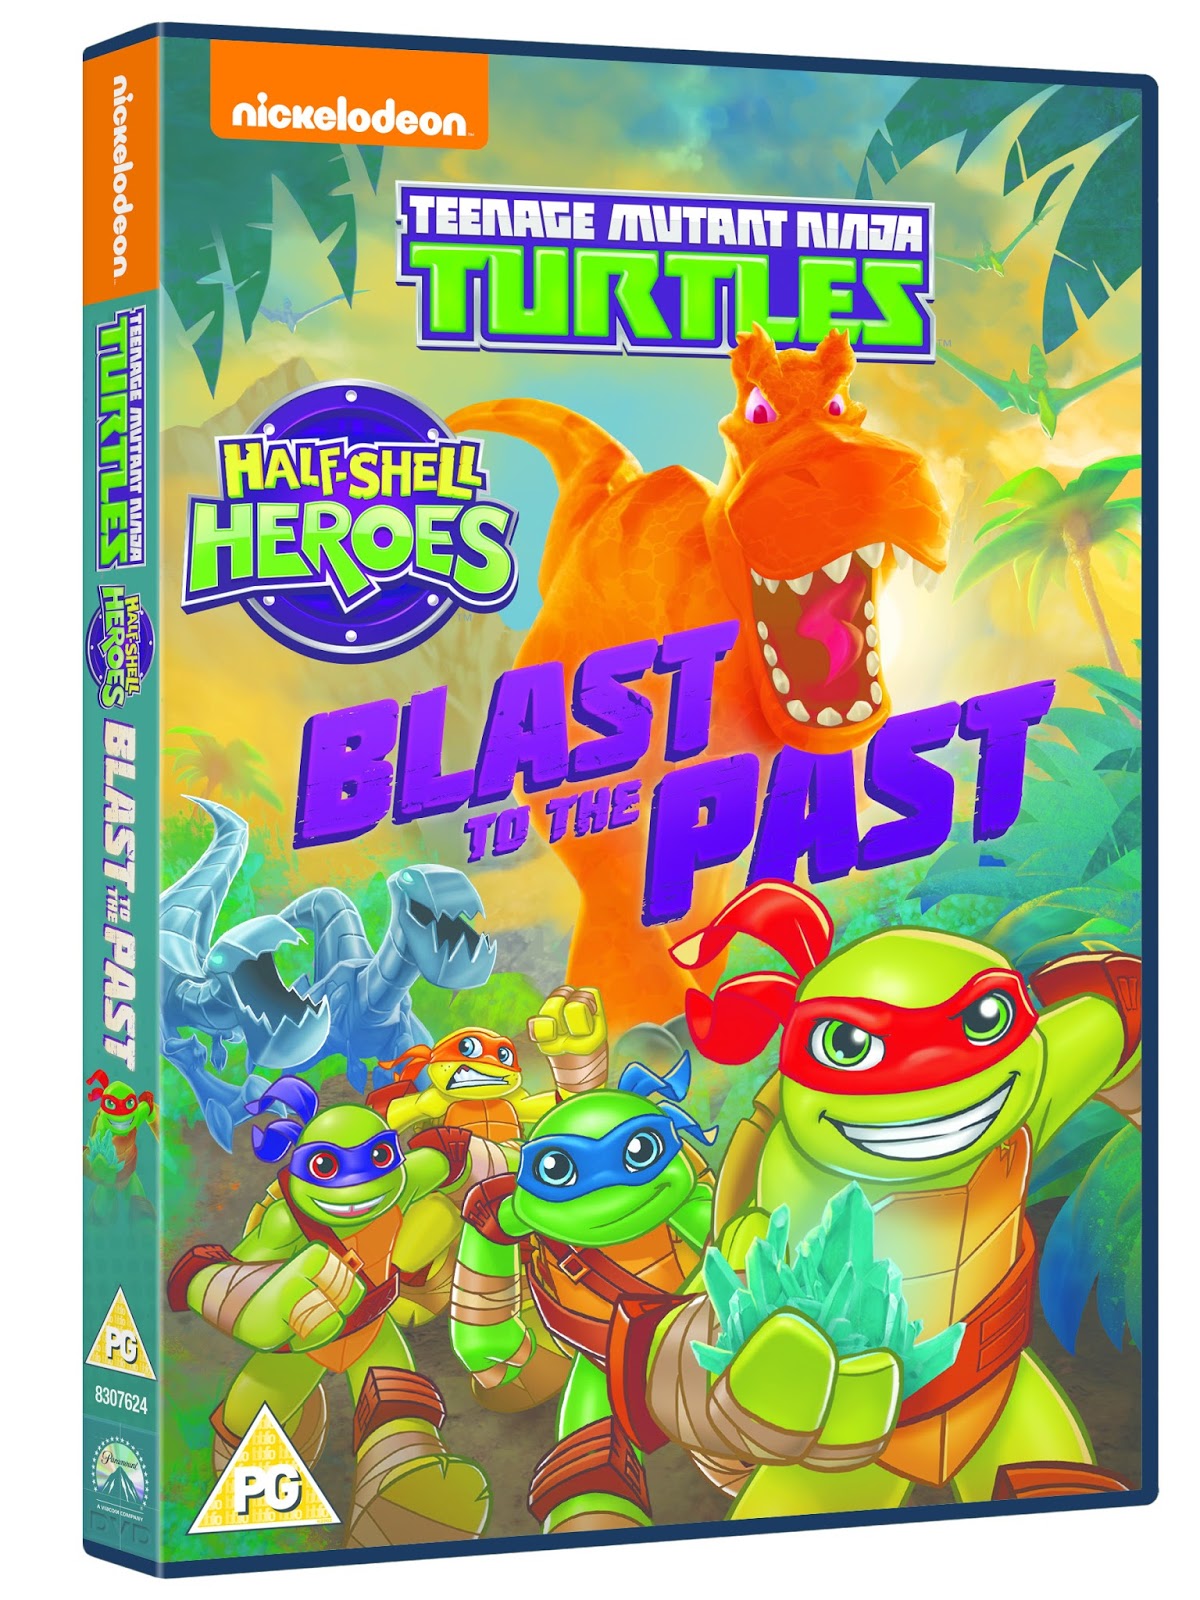 The Brick Castle: Teenage Mutant Ninja Turtles Best Of The Original Series  DVD Giveaway